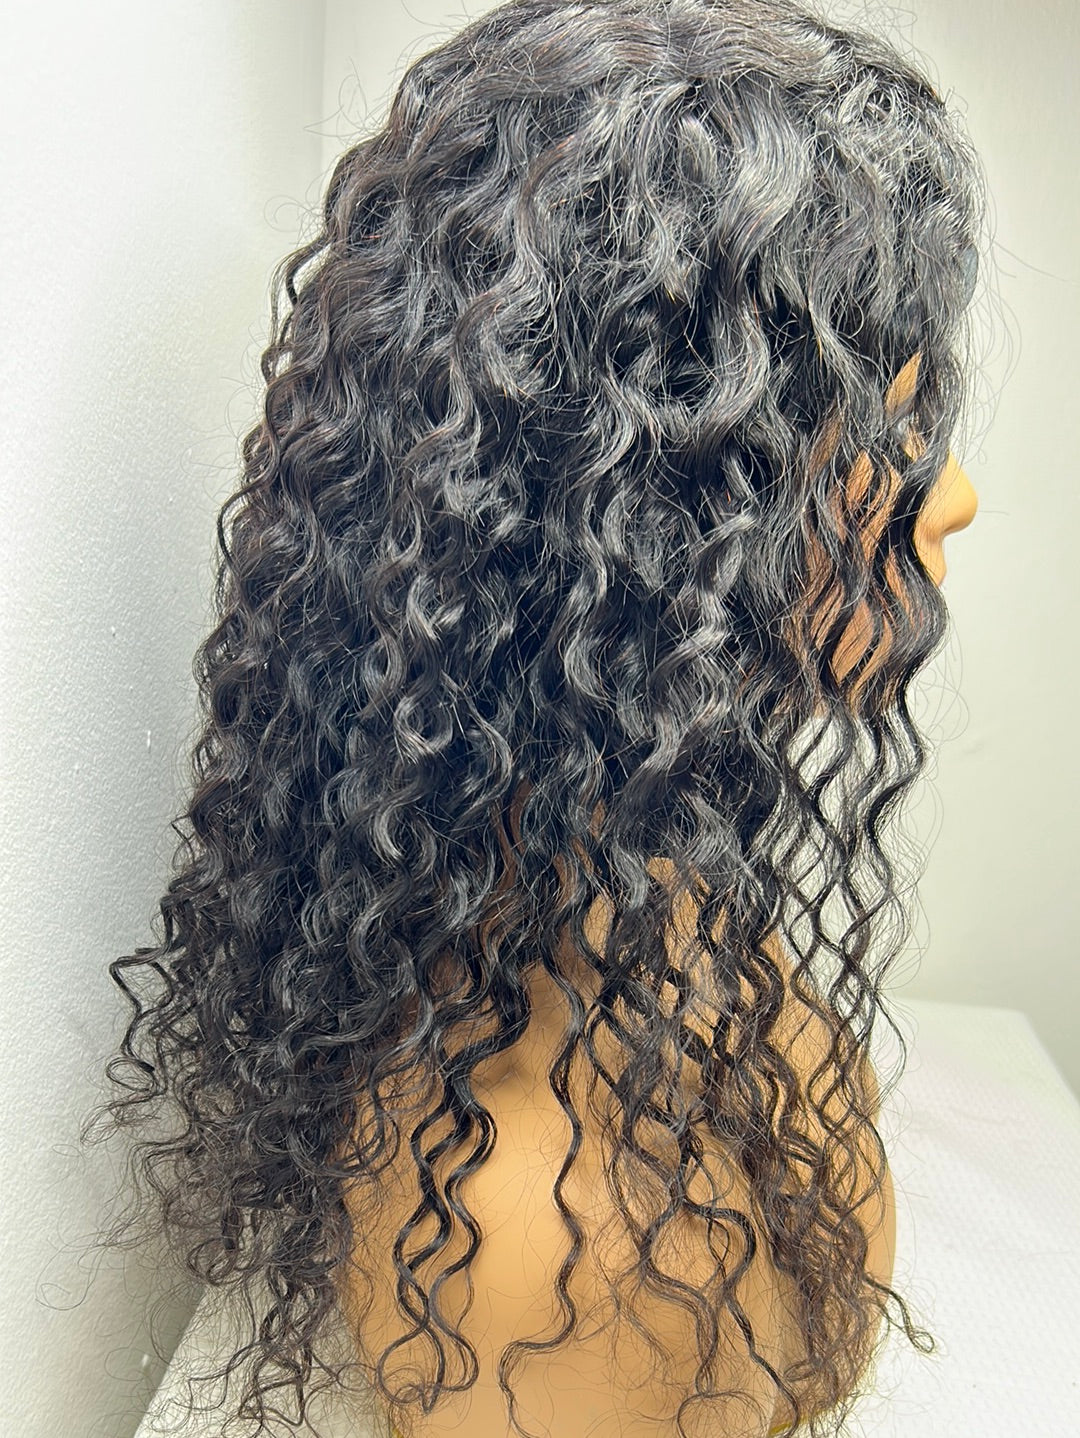 18” Curly Headband Wig